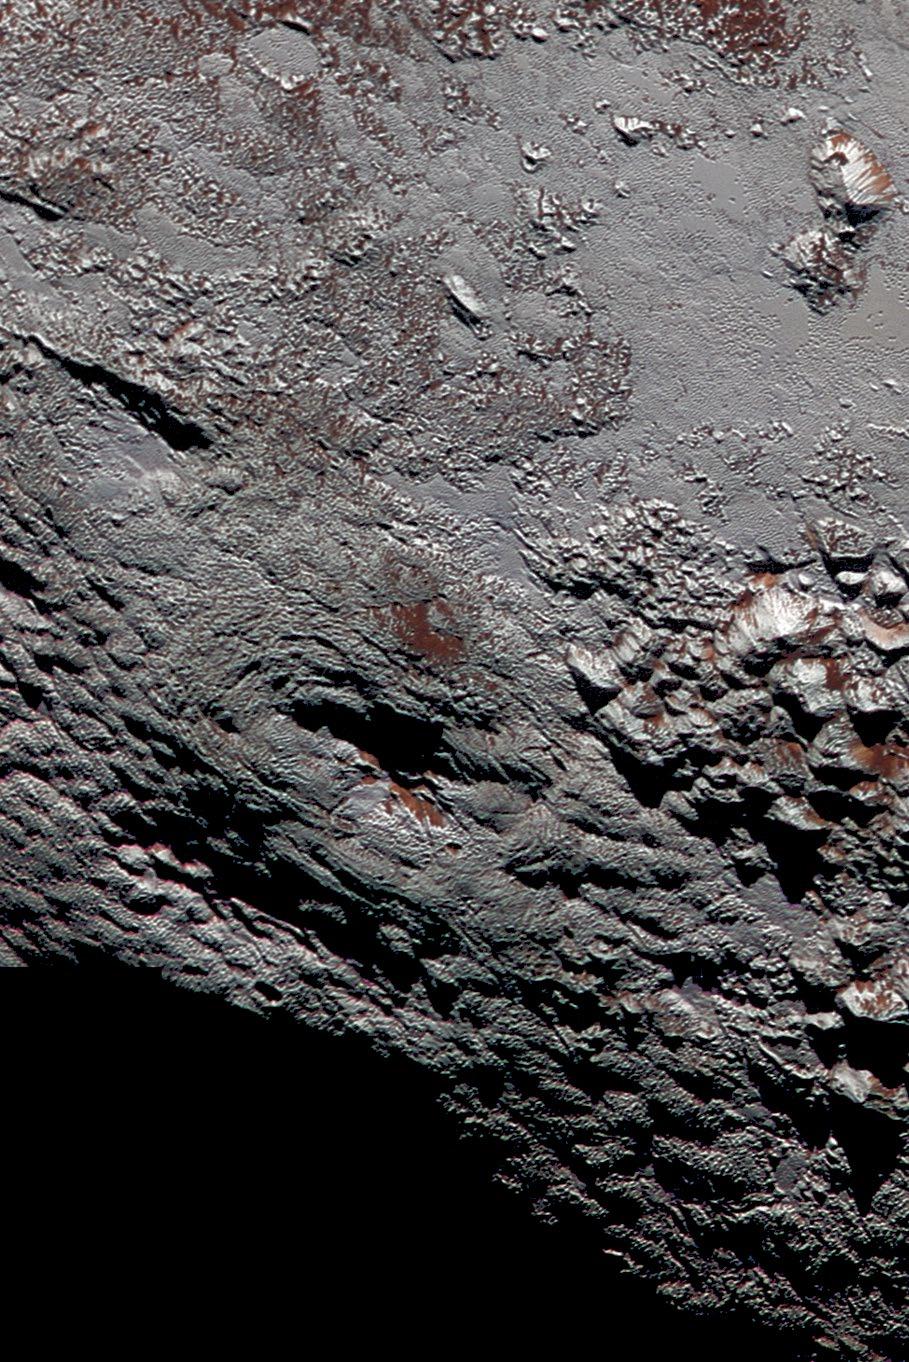 /PSI Plutos kyliga monster: det mörka hålet lite nedanför av bilds